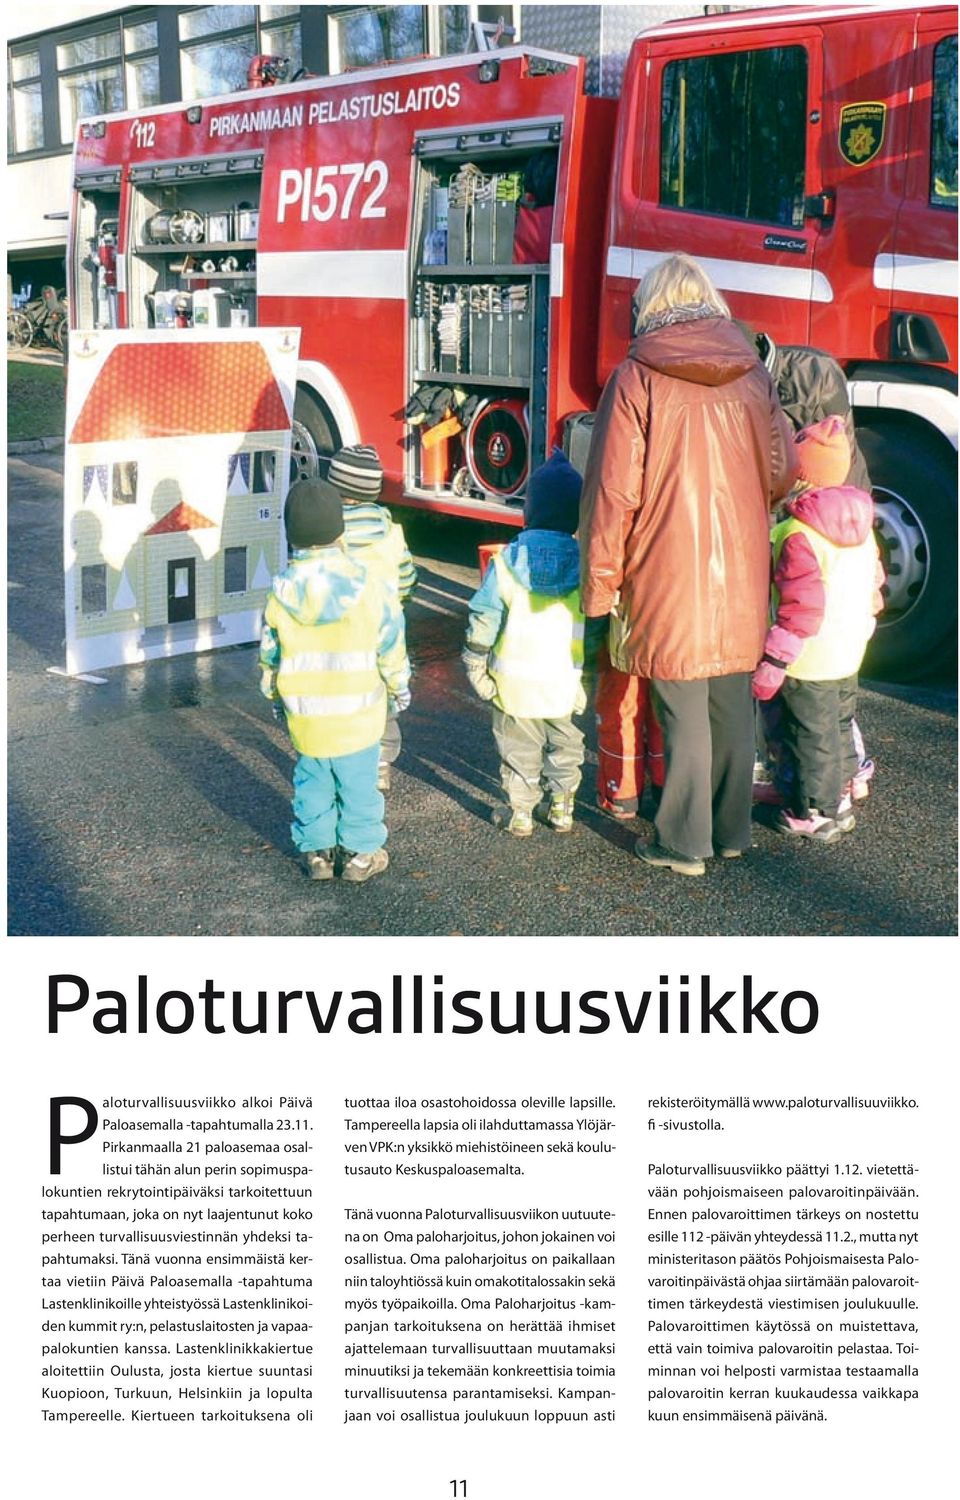 tapahtumaksi. Tänä vuonna ensimmäistä kertaa vietiin Päivä Paloasemalla -tapahtuma Lastenklinikoille yhteistyössä Lastenklinikoiden kummit ry:n, pelastuslaitosten ja vapaapalokuntien kanssa.